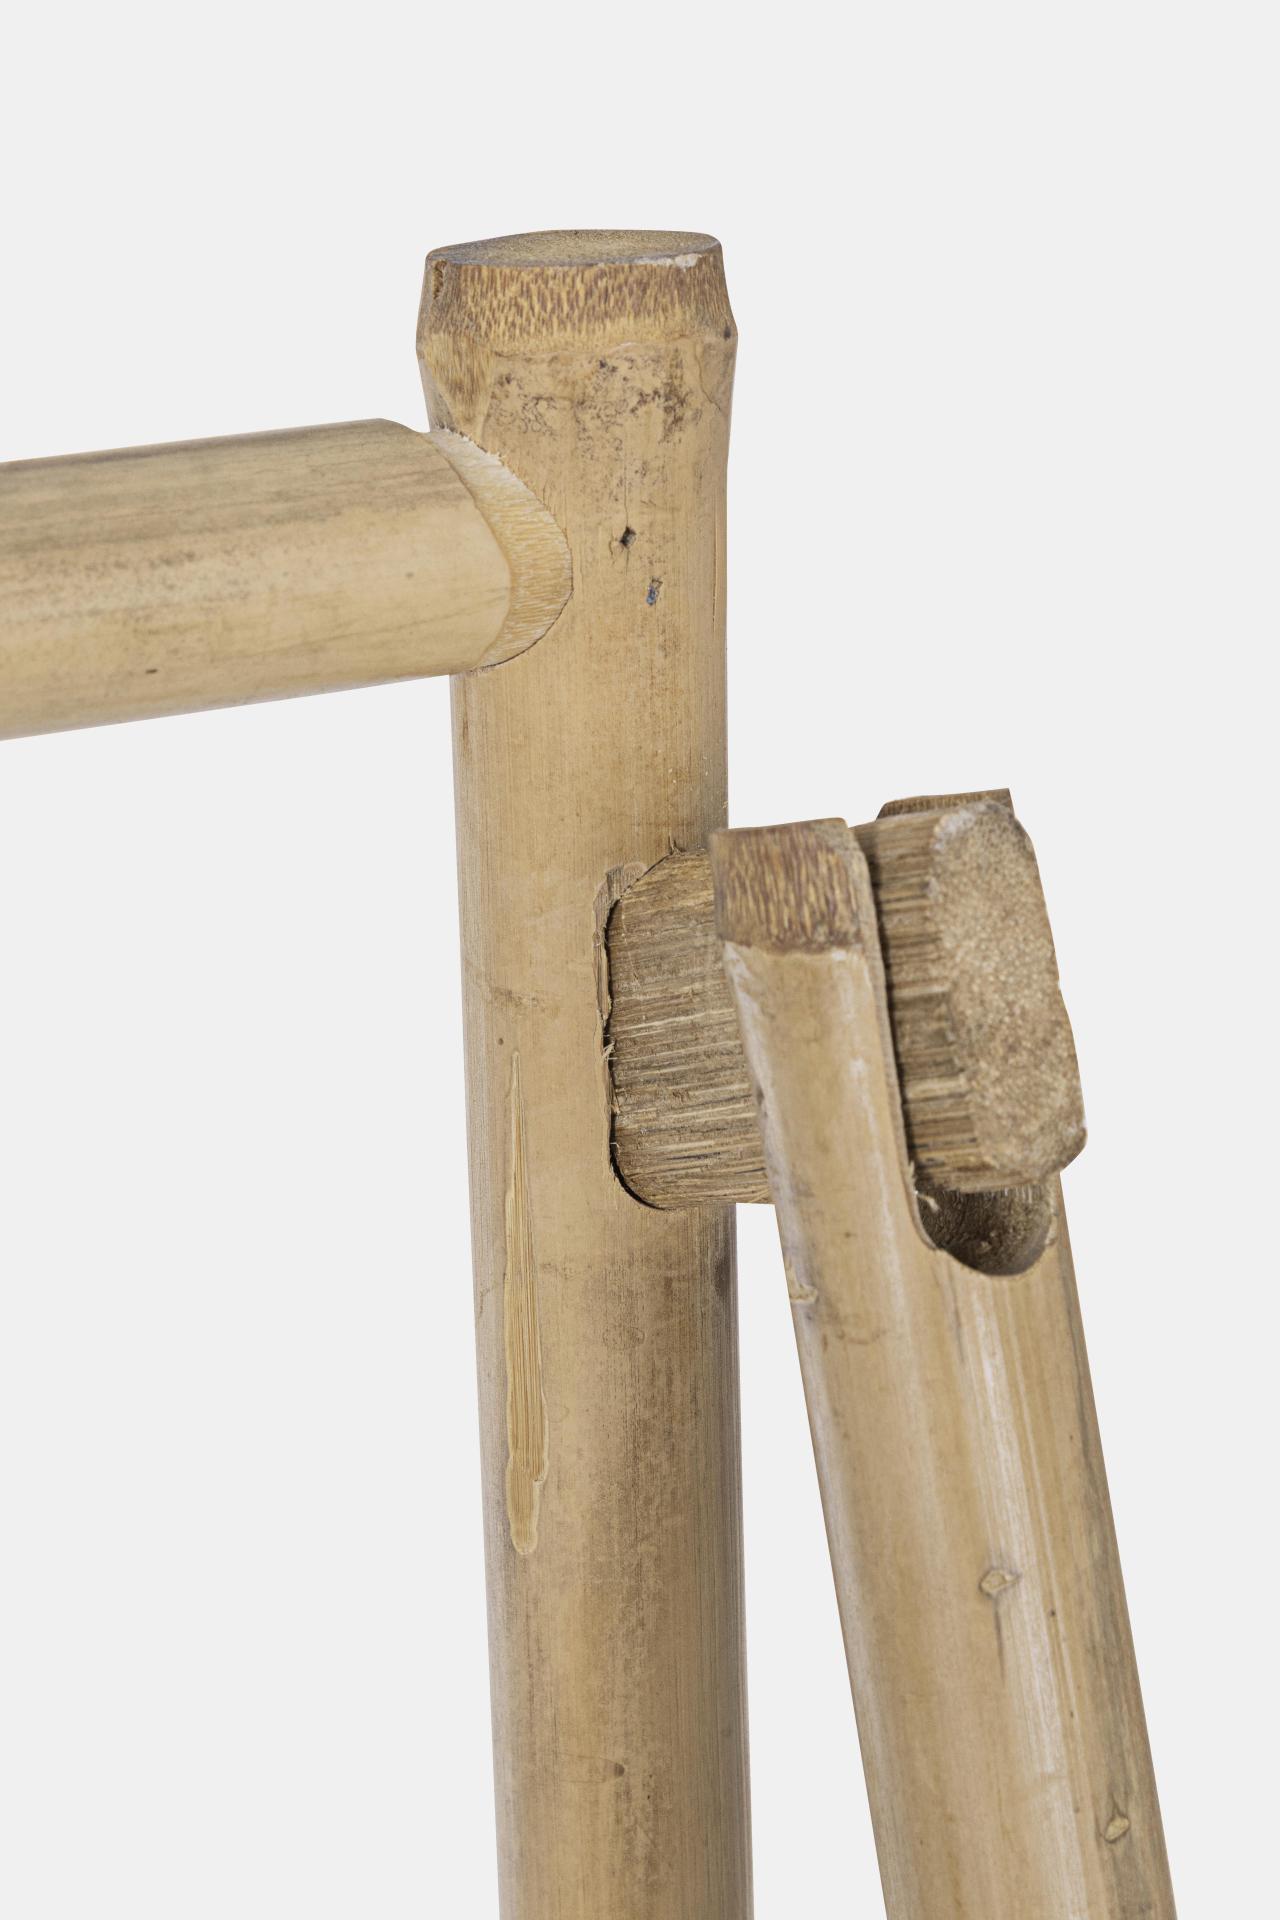 Das Regal Joyce überzeugt mit seinem klassischen Design. Gefertigt wurde es aus Bambusholz, welches einen natürlichen Farbton besitzt. Das Gestell ist auch aus Bambus. Das Bücherregal verfügt über drei Böden. Die Breite beträgt 56 cm.